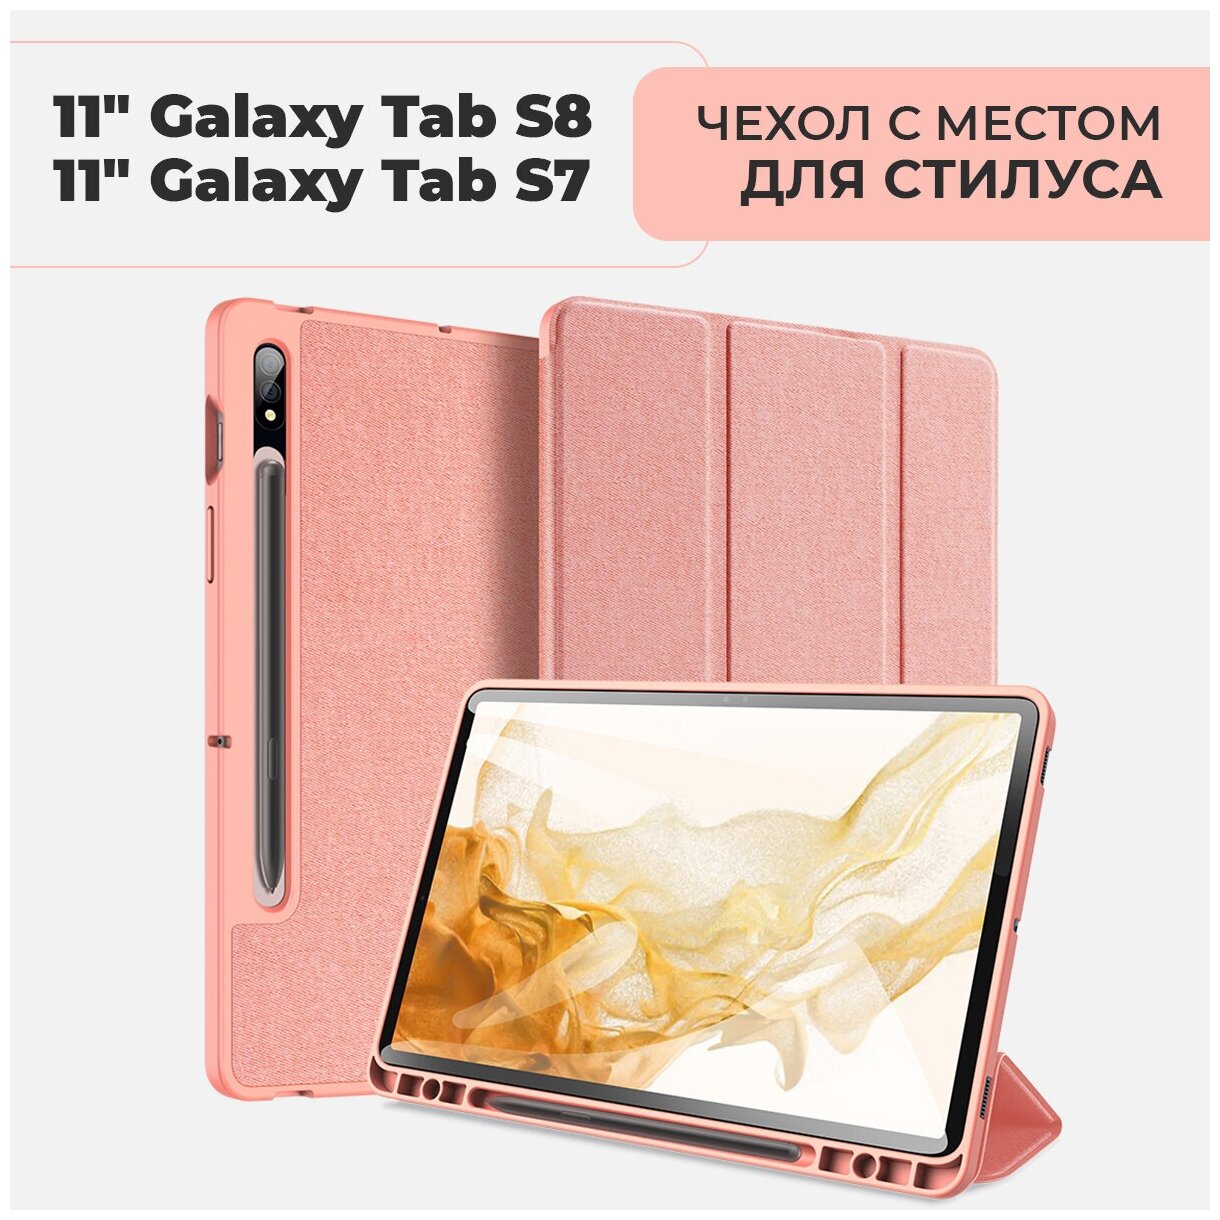 Чехол премиальный для планшета Samsung Galaxy Tab S7 / S8 экран 11.0" ,с местом для стилуса, розовый